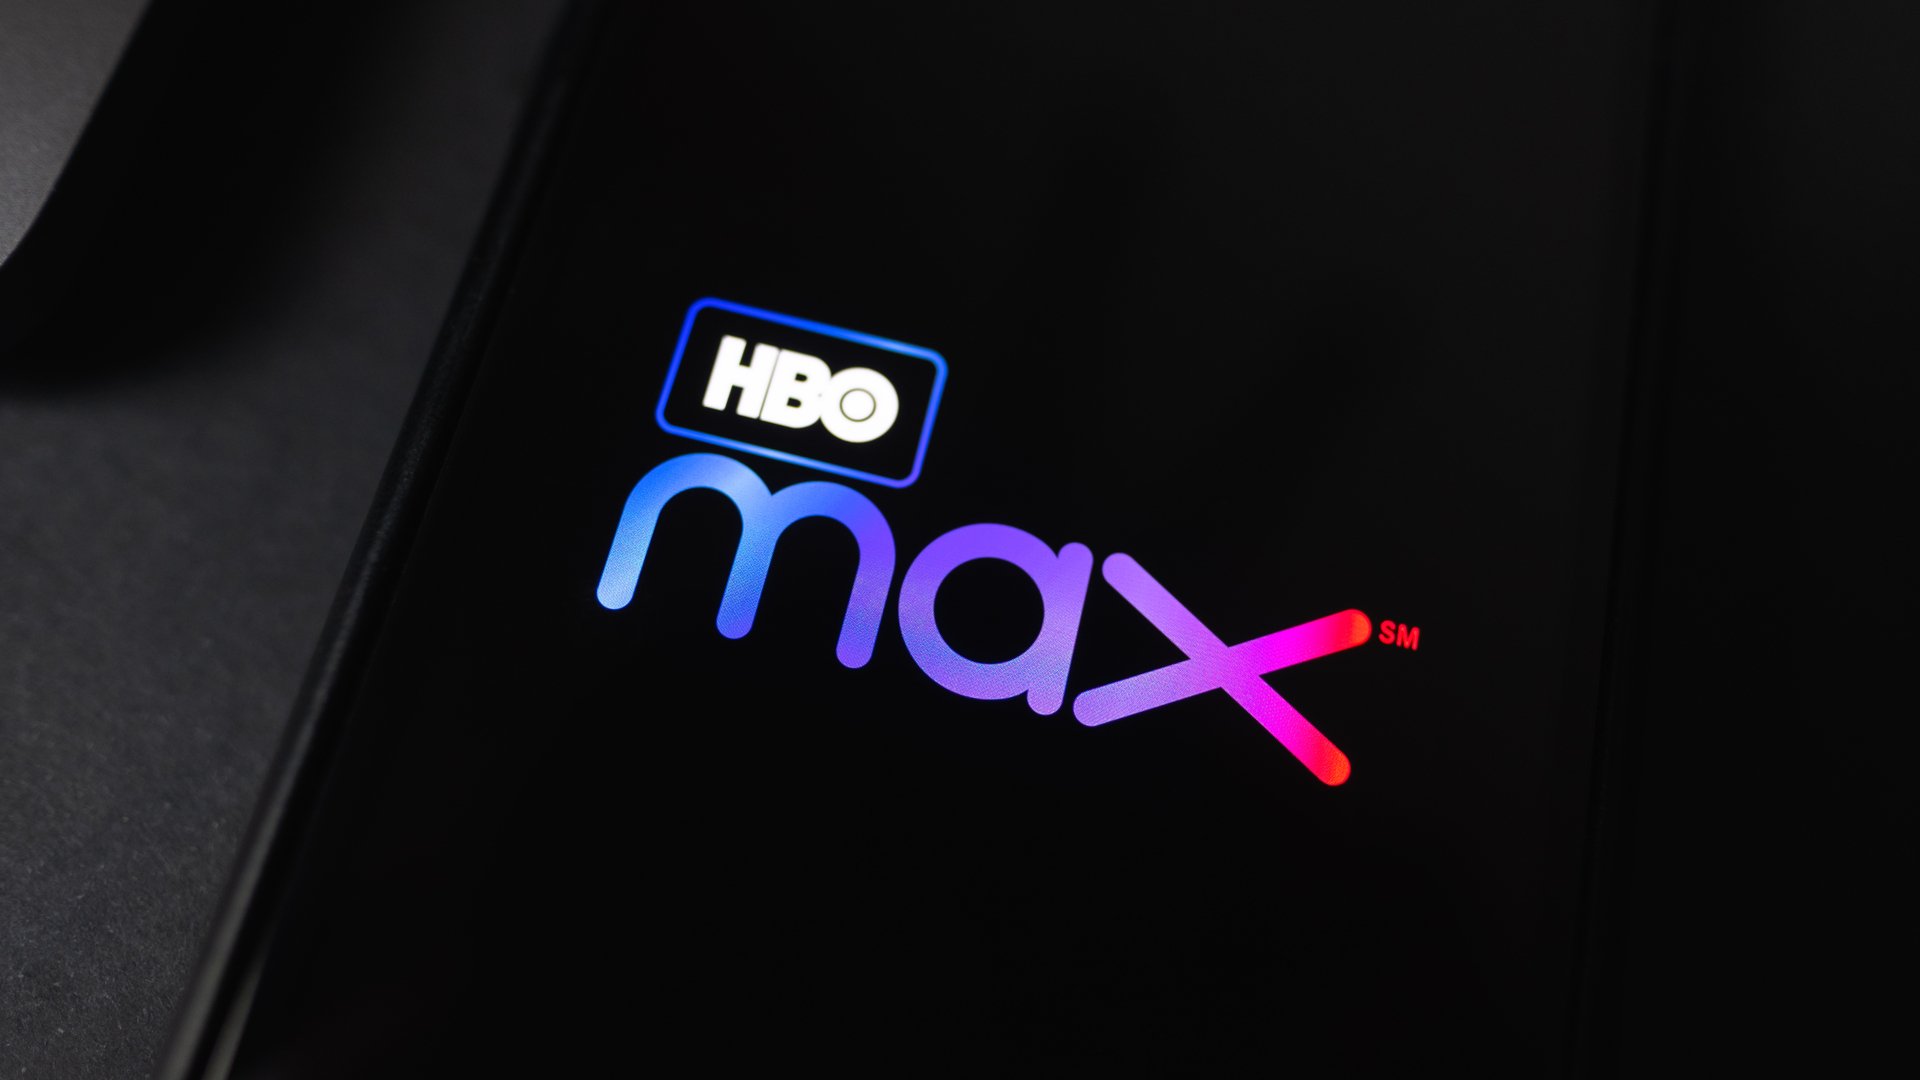 HBO Max: assinatura com 50% de desconto para sempre acaba neste sábado